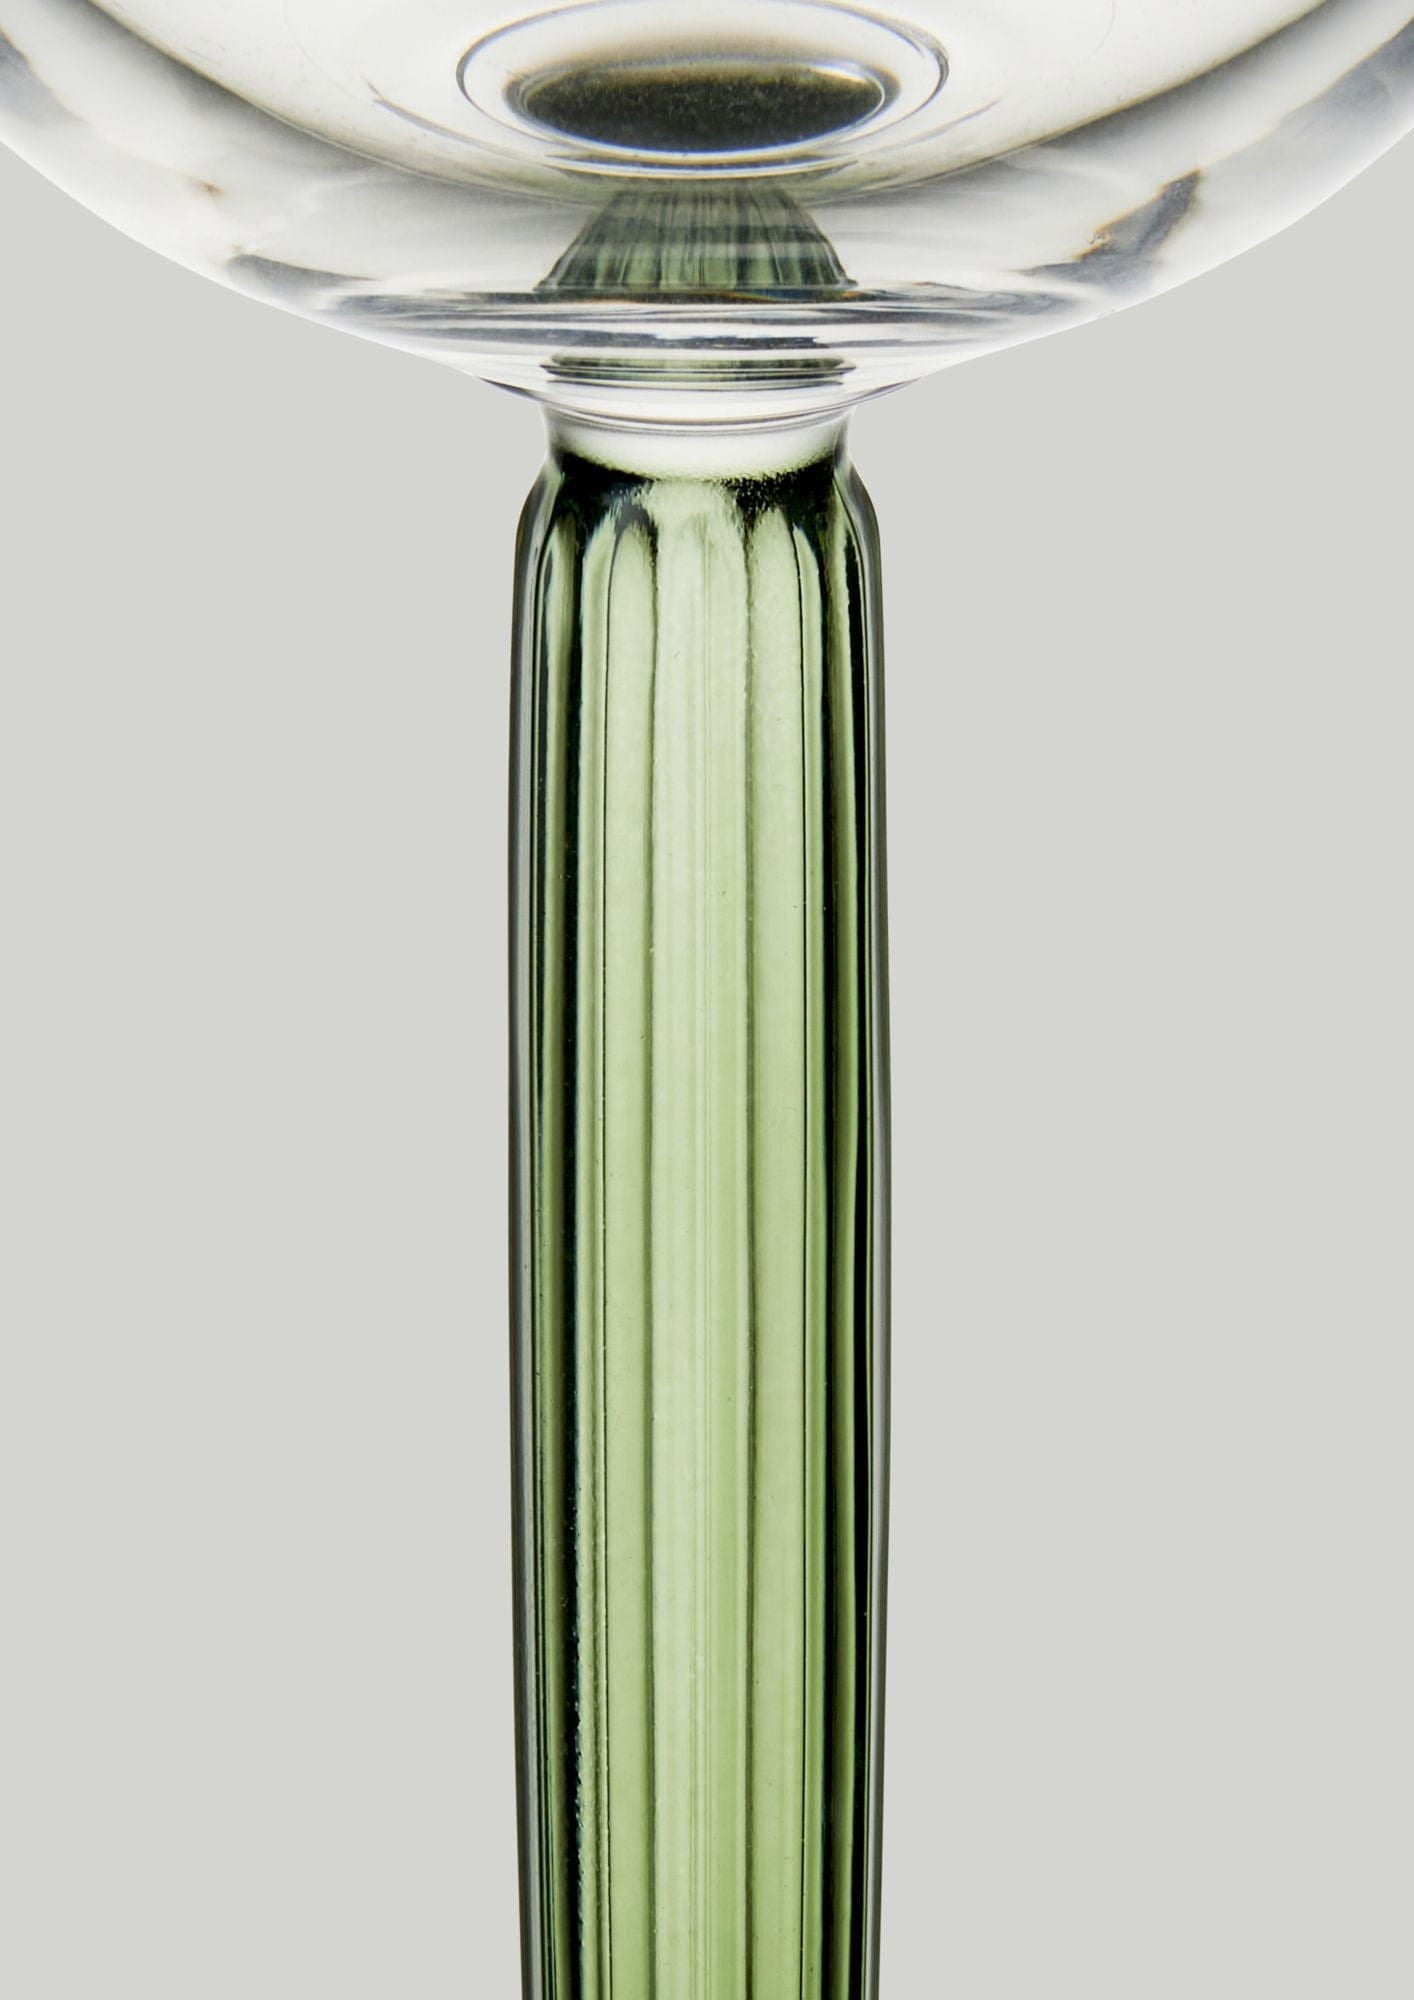 Kähler Hammershøi Champagne Glass Sæt på 240 ml, grønt